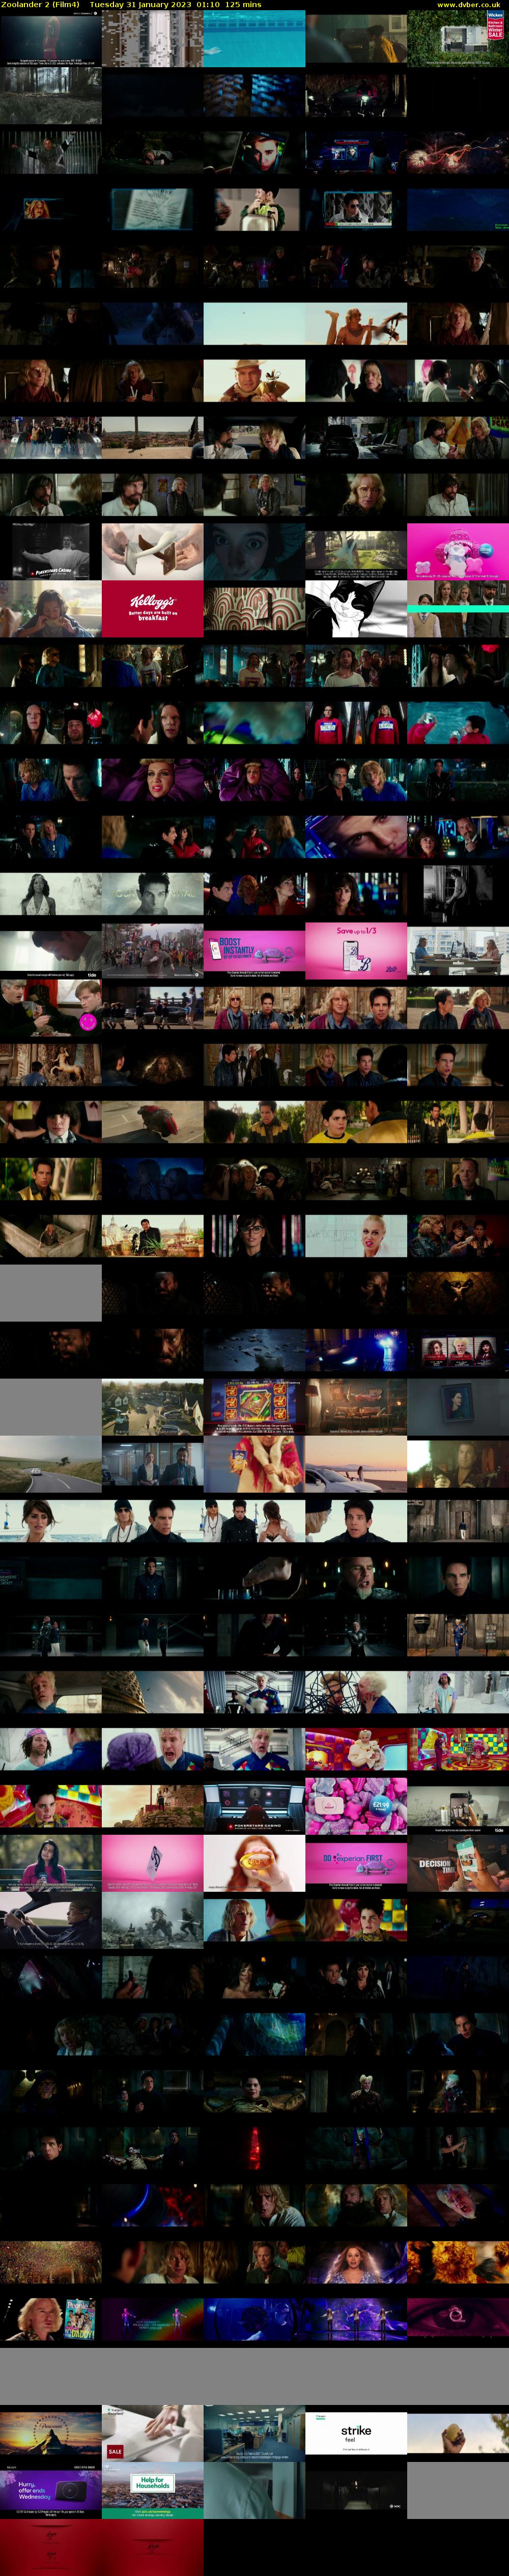 Zoolander 2 (Film4) Tuesday 31 January 2023 01:10 - 03:15